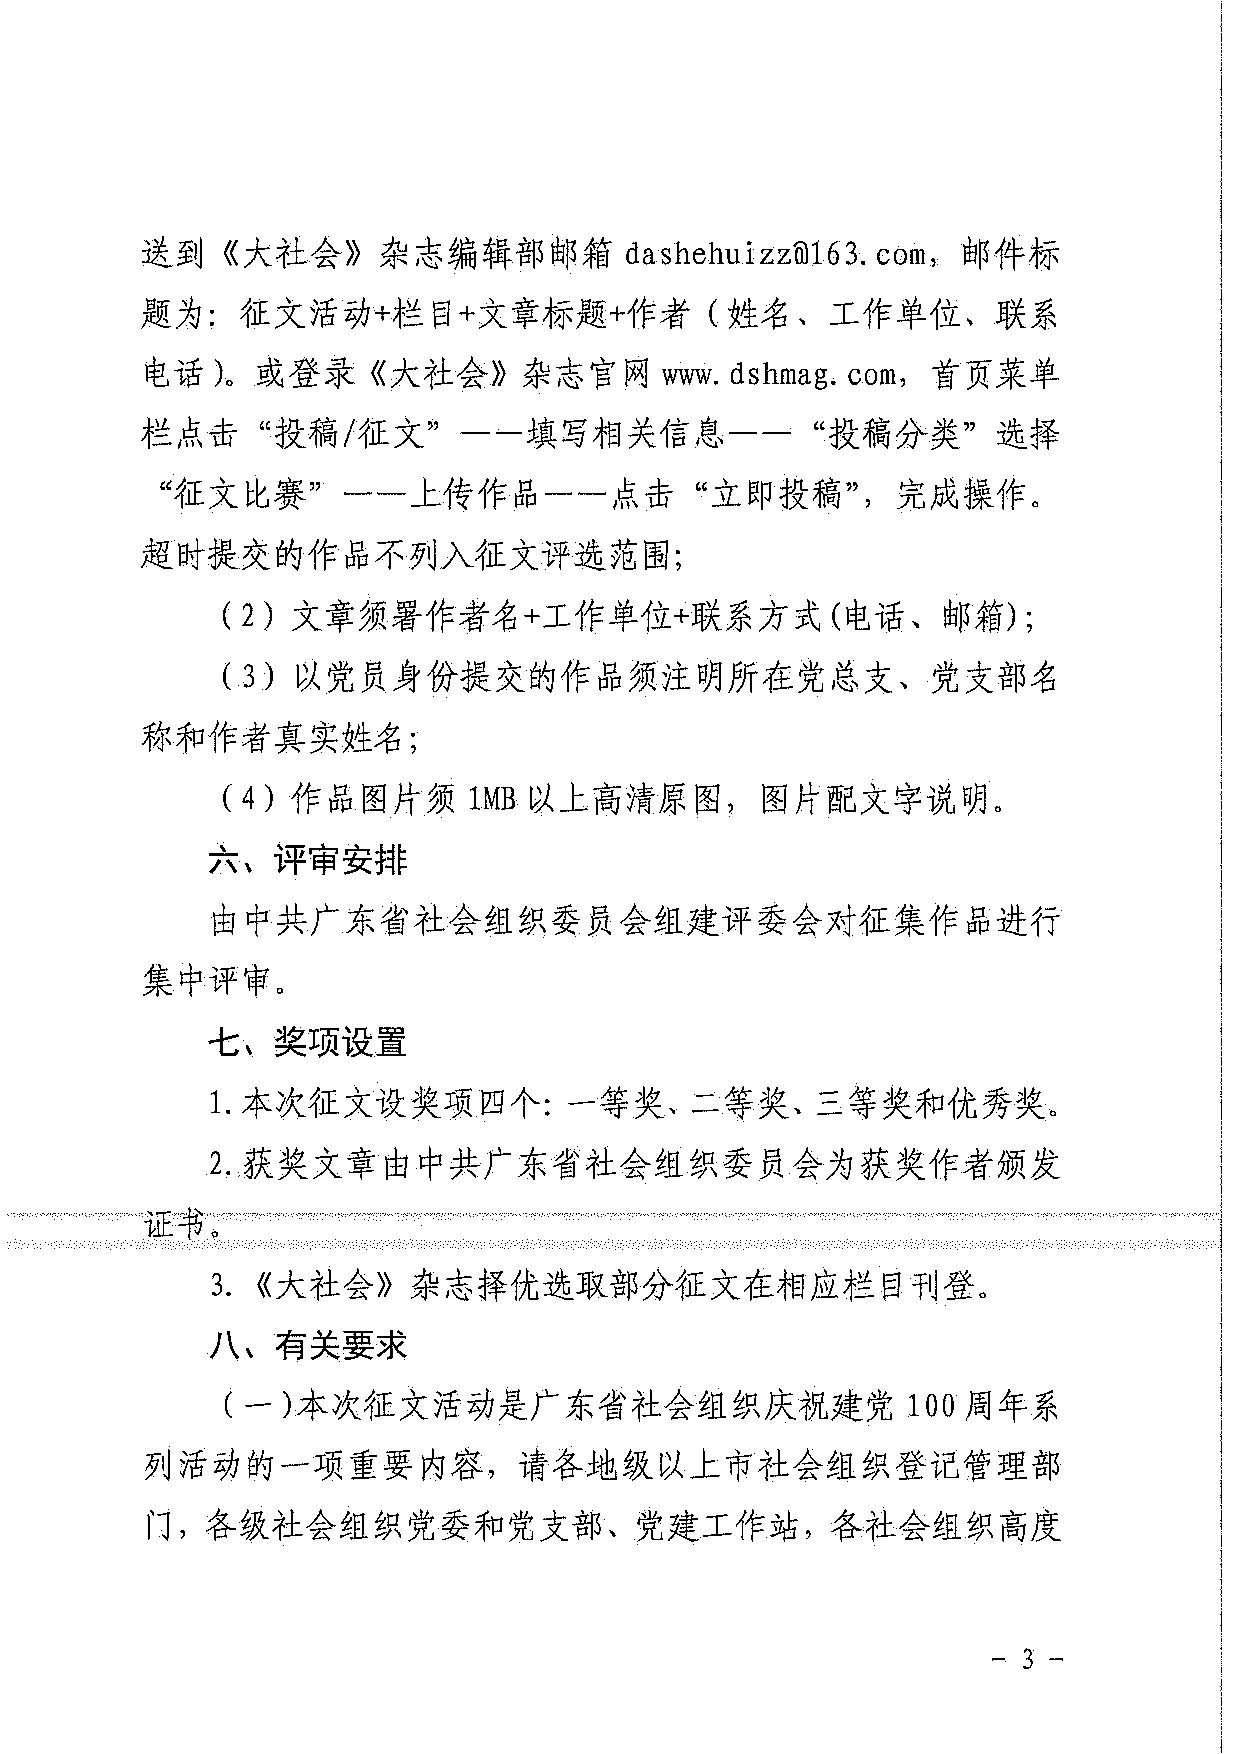 中共广东省社会组织委员会关于开展庆祝建党100周年主题征文活动的通知_3.jpg